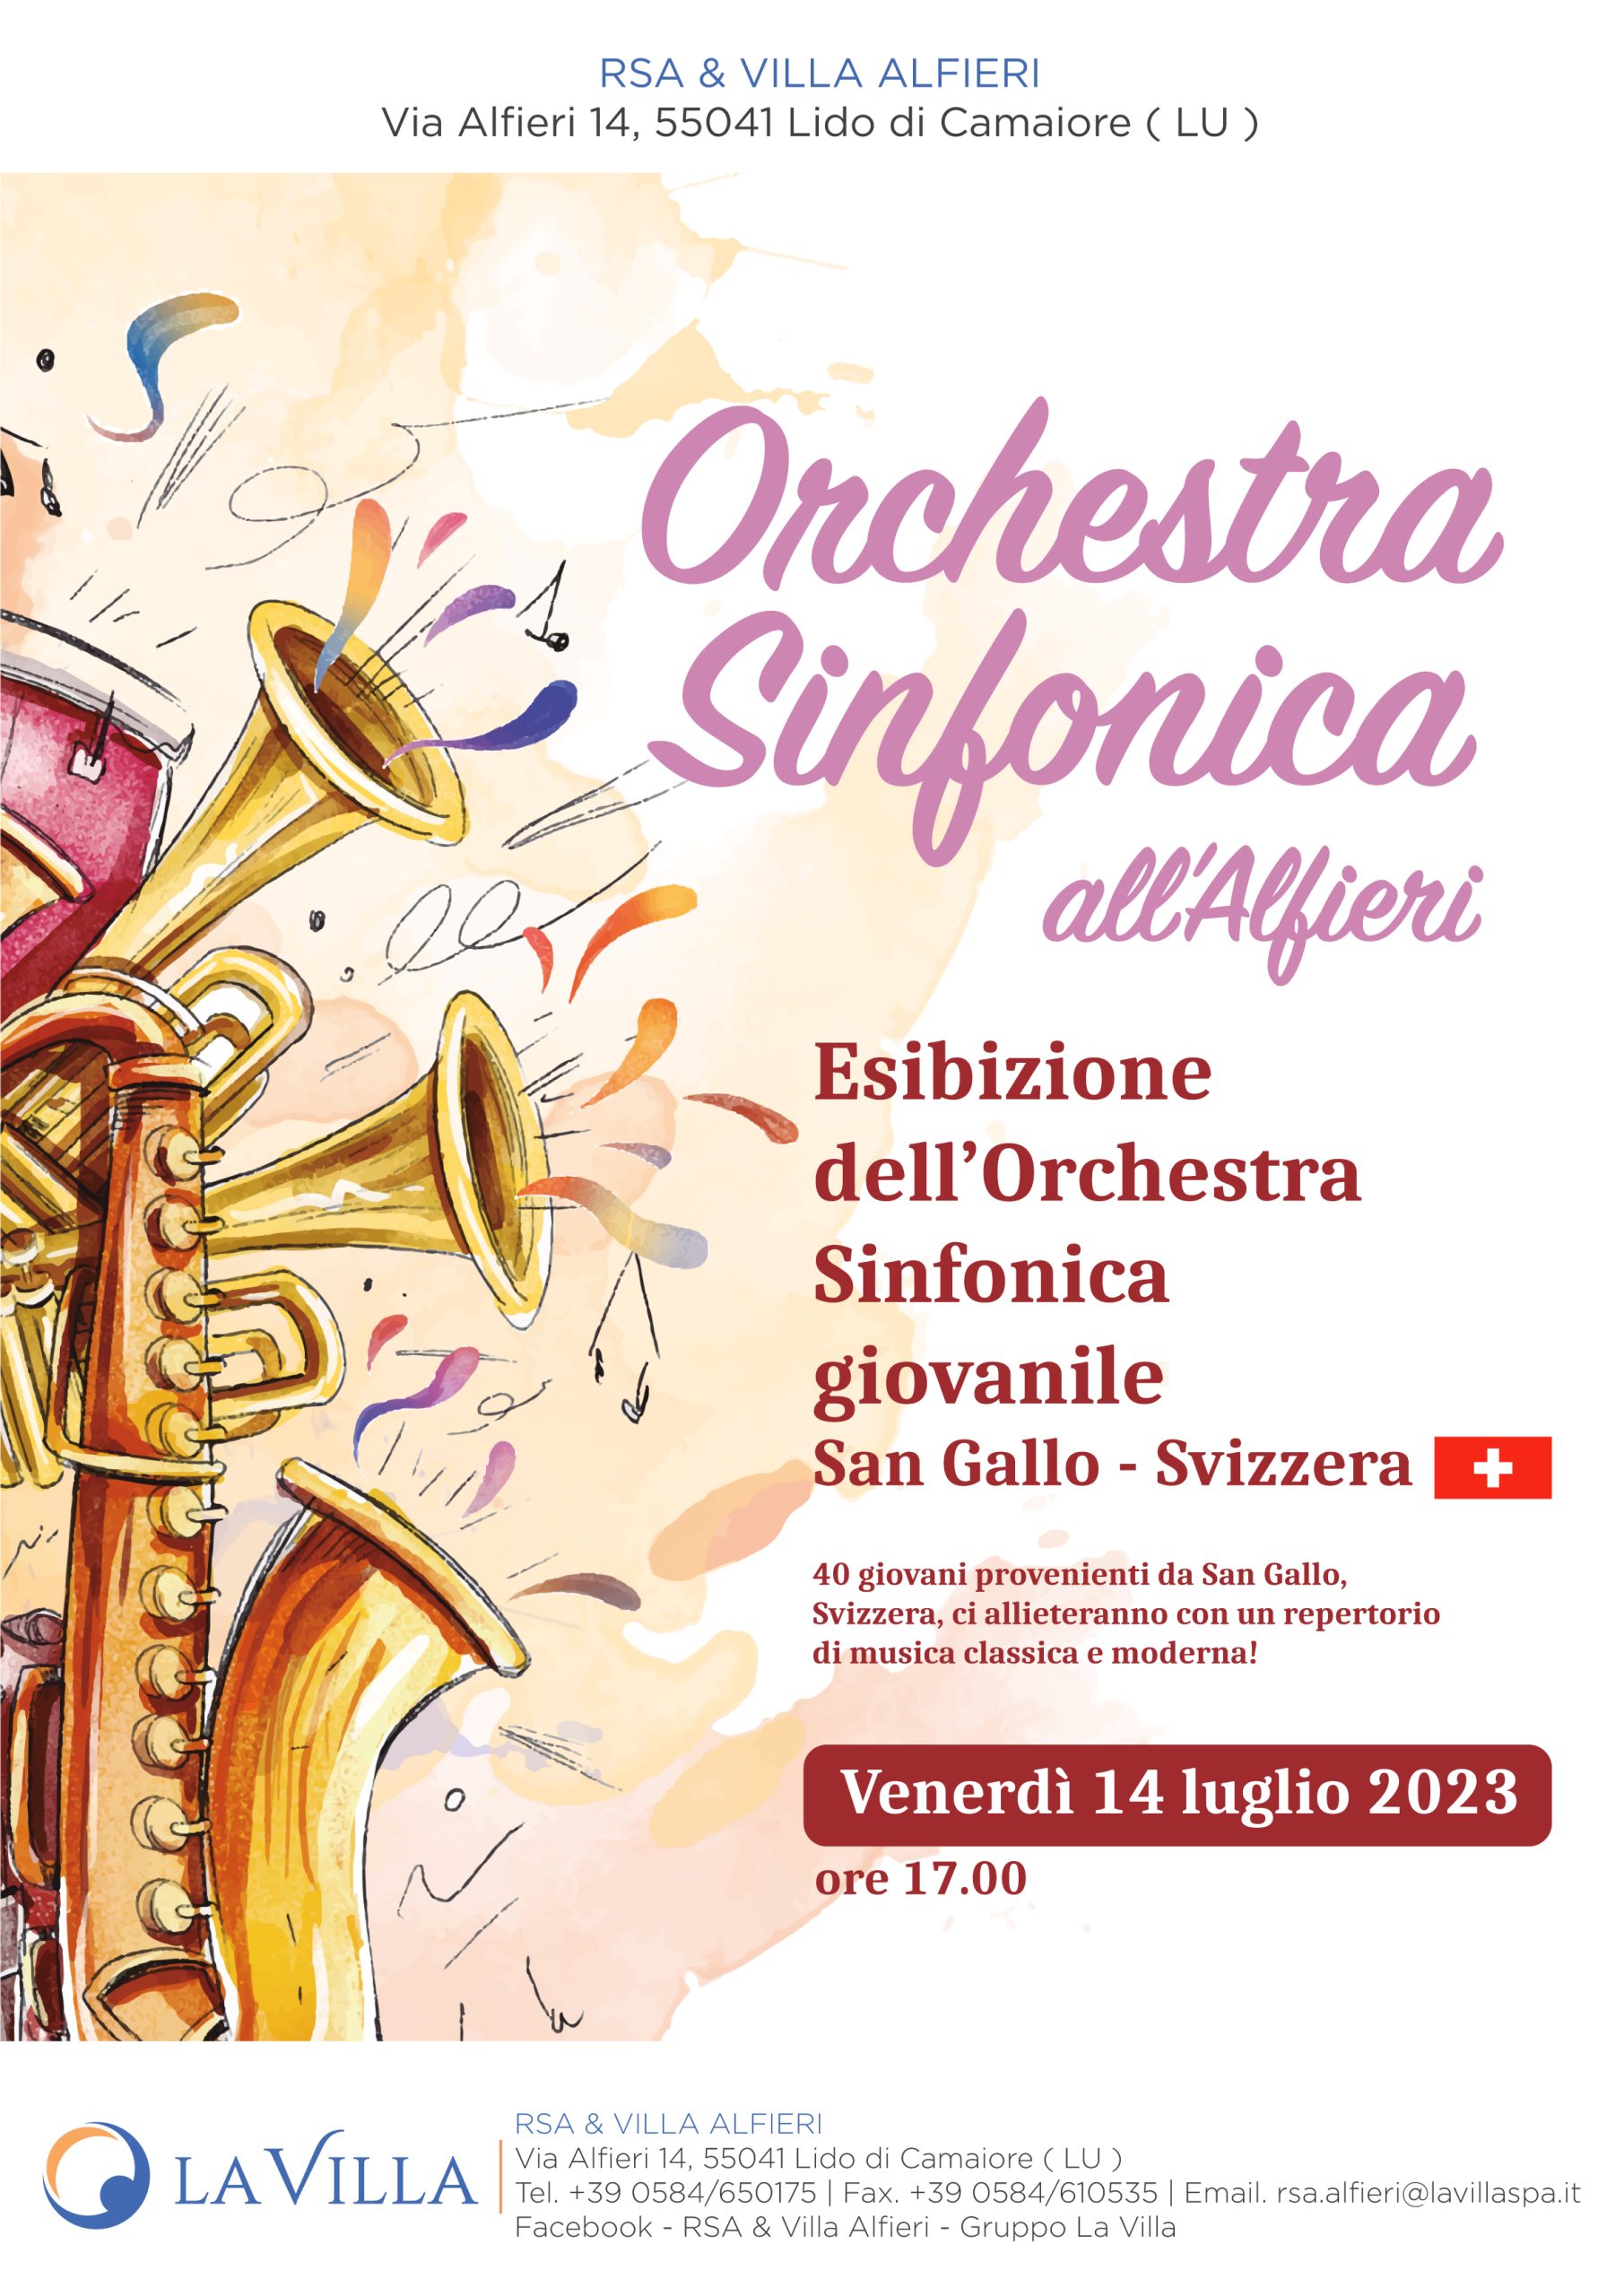 rsa alfieri orchestra sinfonica giovanile san gallo svizzera